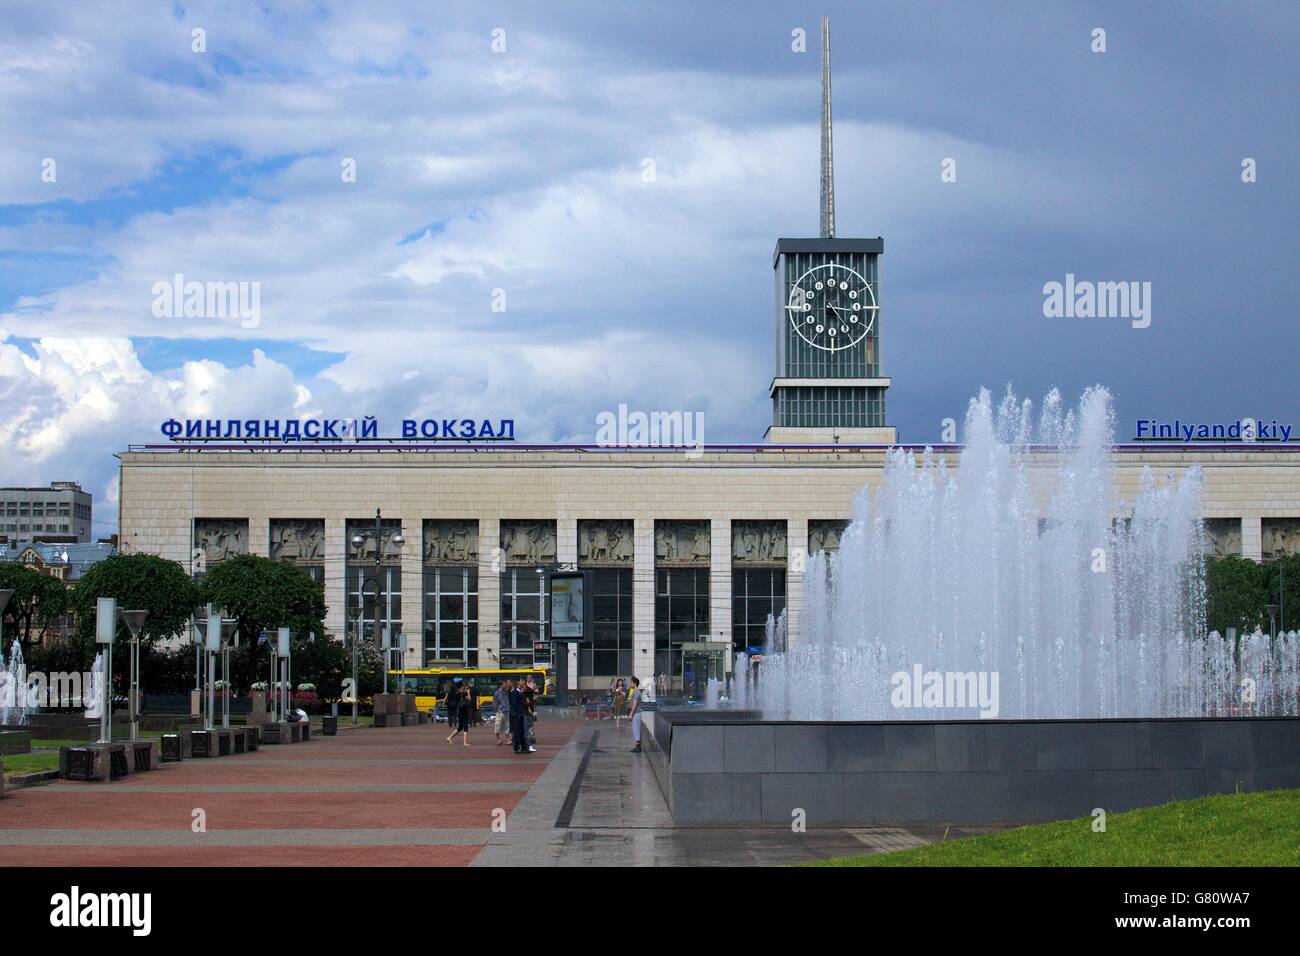 Finlyandskiy oder Finnland Bahnhof, St. Petersburg, Russland Stockfoto